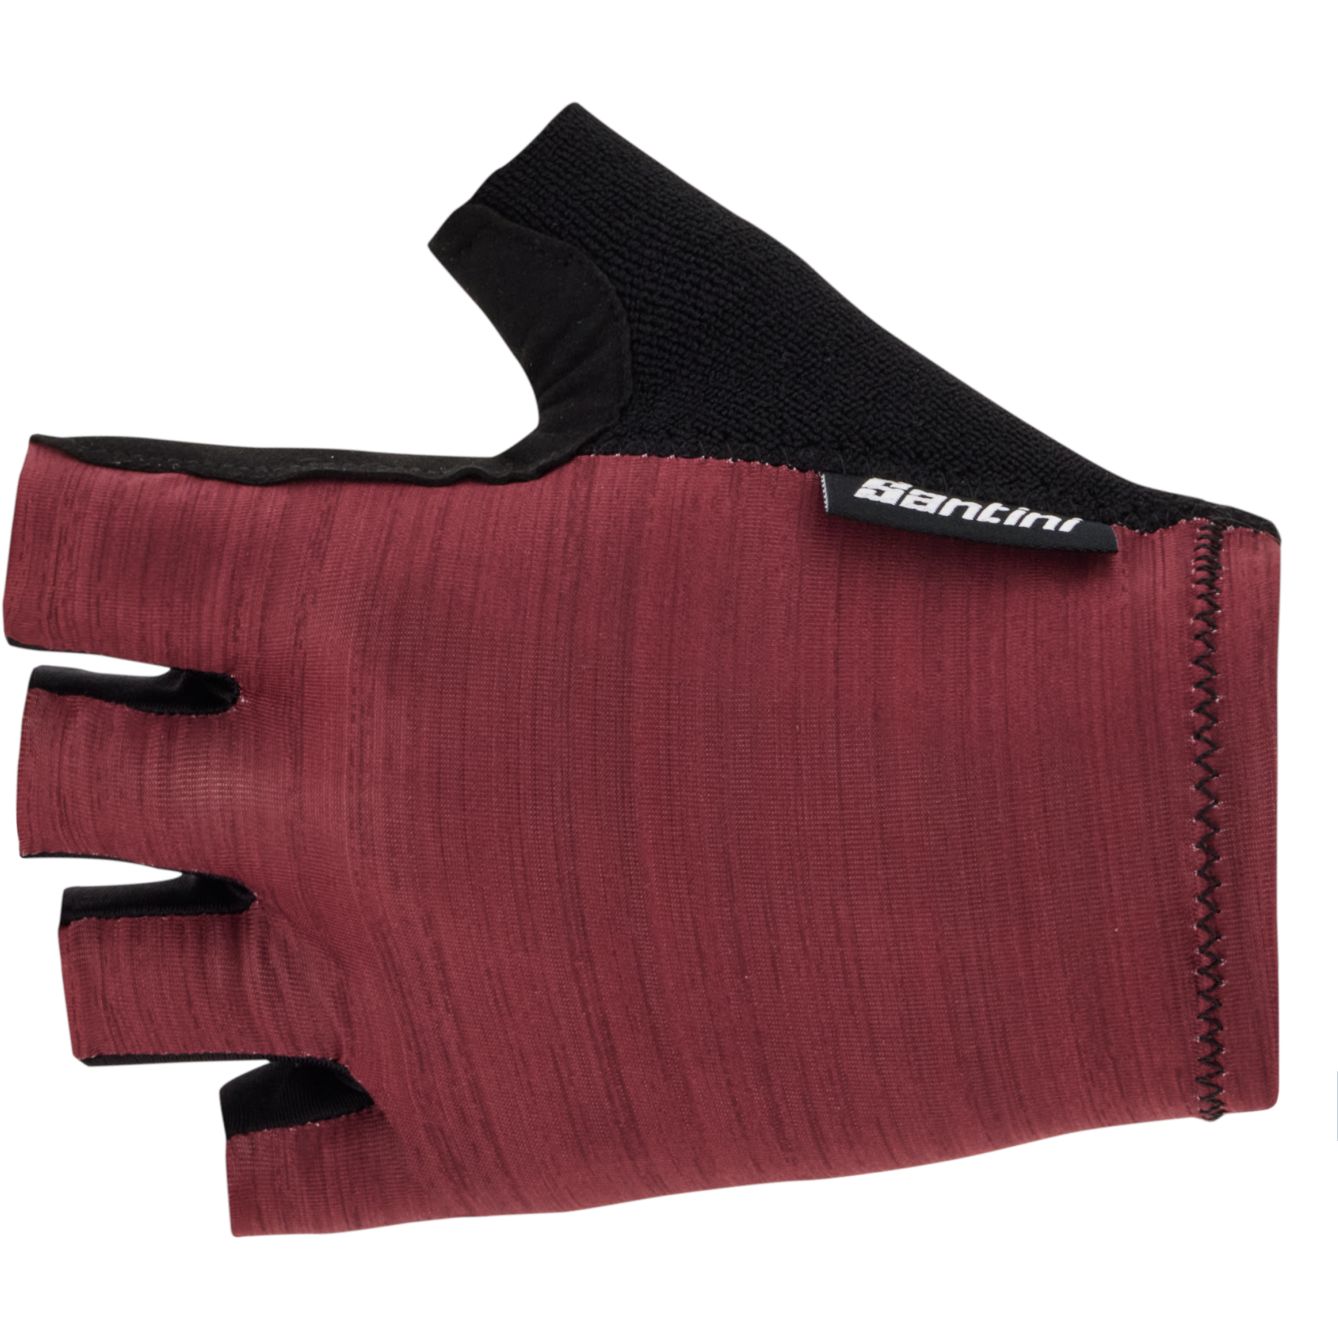 Produktbild von Santini Cubo Kurzfinger-Handschuhe 1S367CLCUBO - burgundy BU